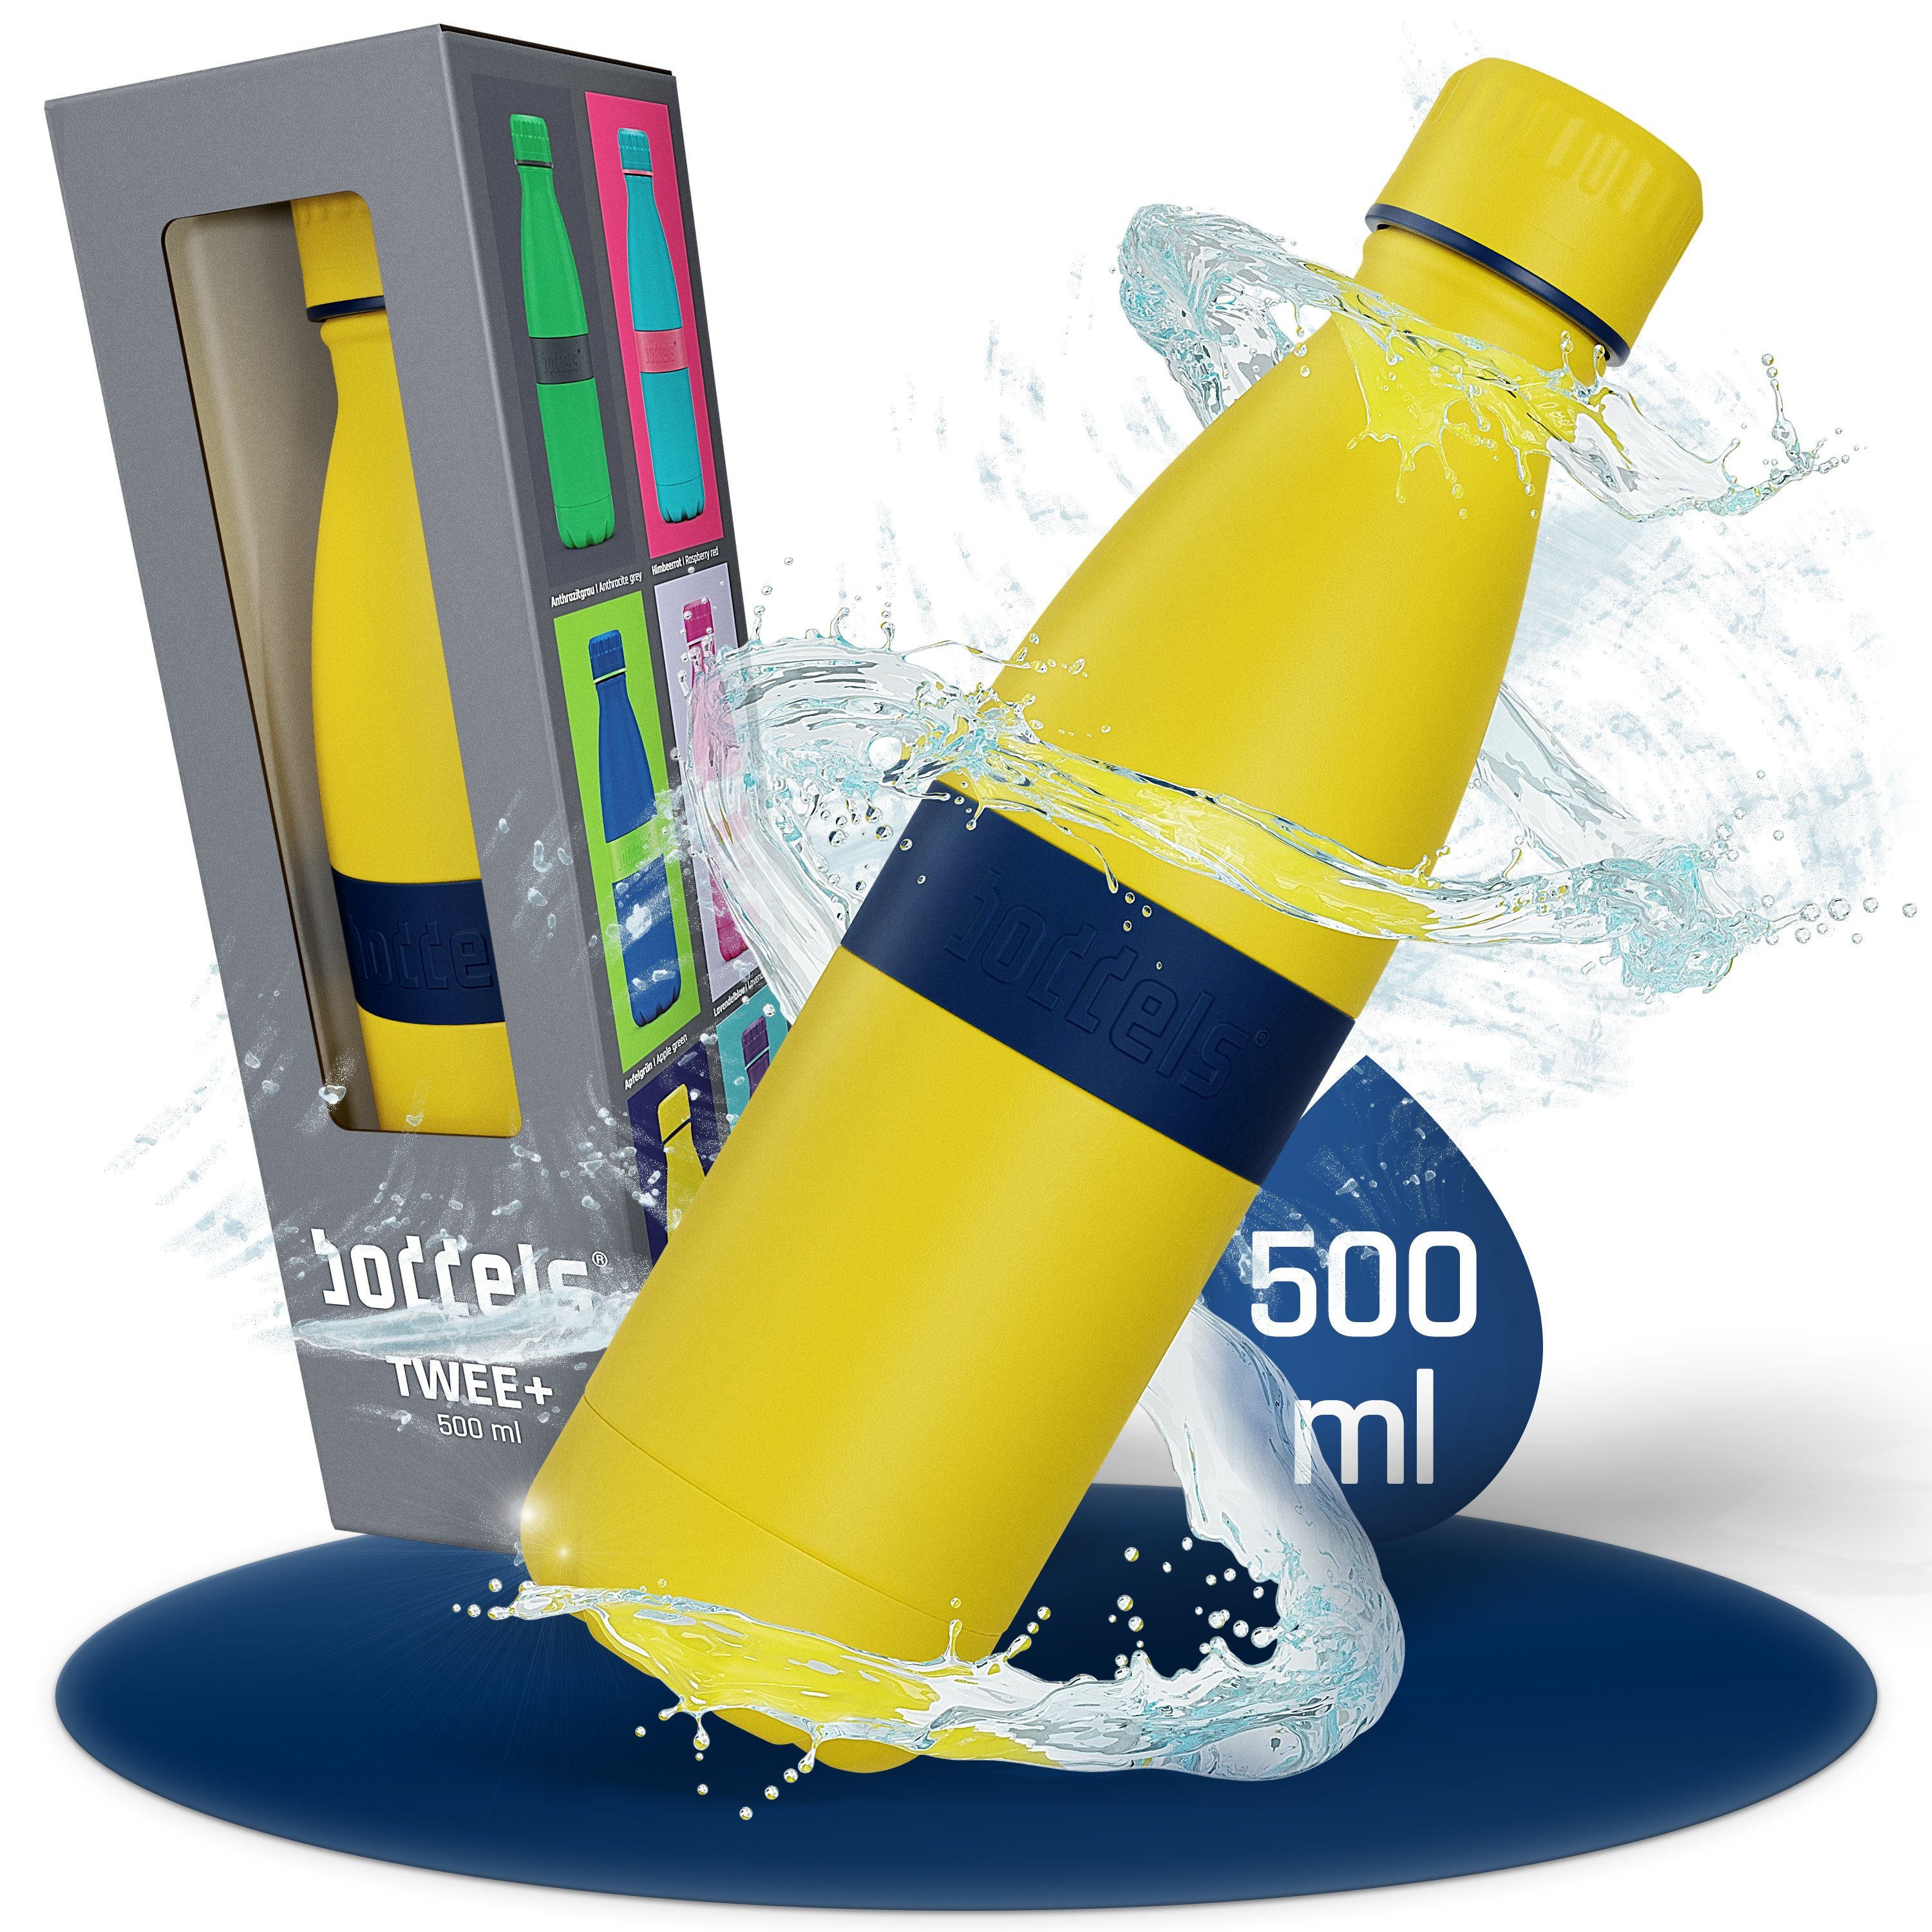 boddels Isolierflasche TWEE+ 500ml - Trinkflasche aus Edelstahl, doppelwandig, auslaufsicher, bruchfest Nachtblau / Gelb